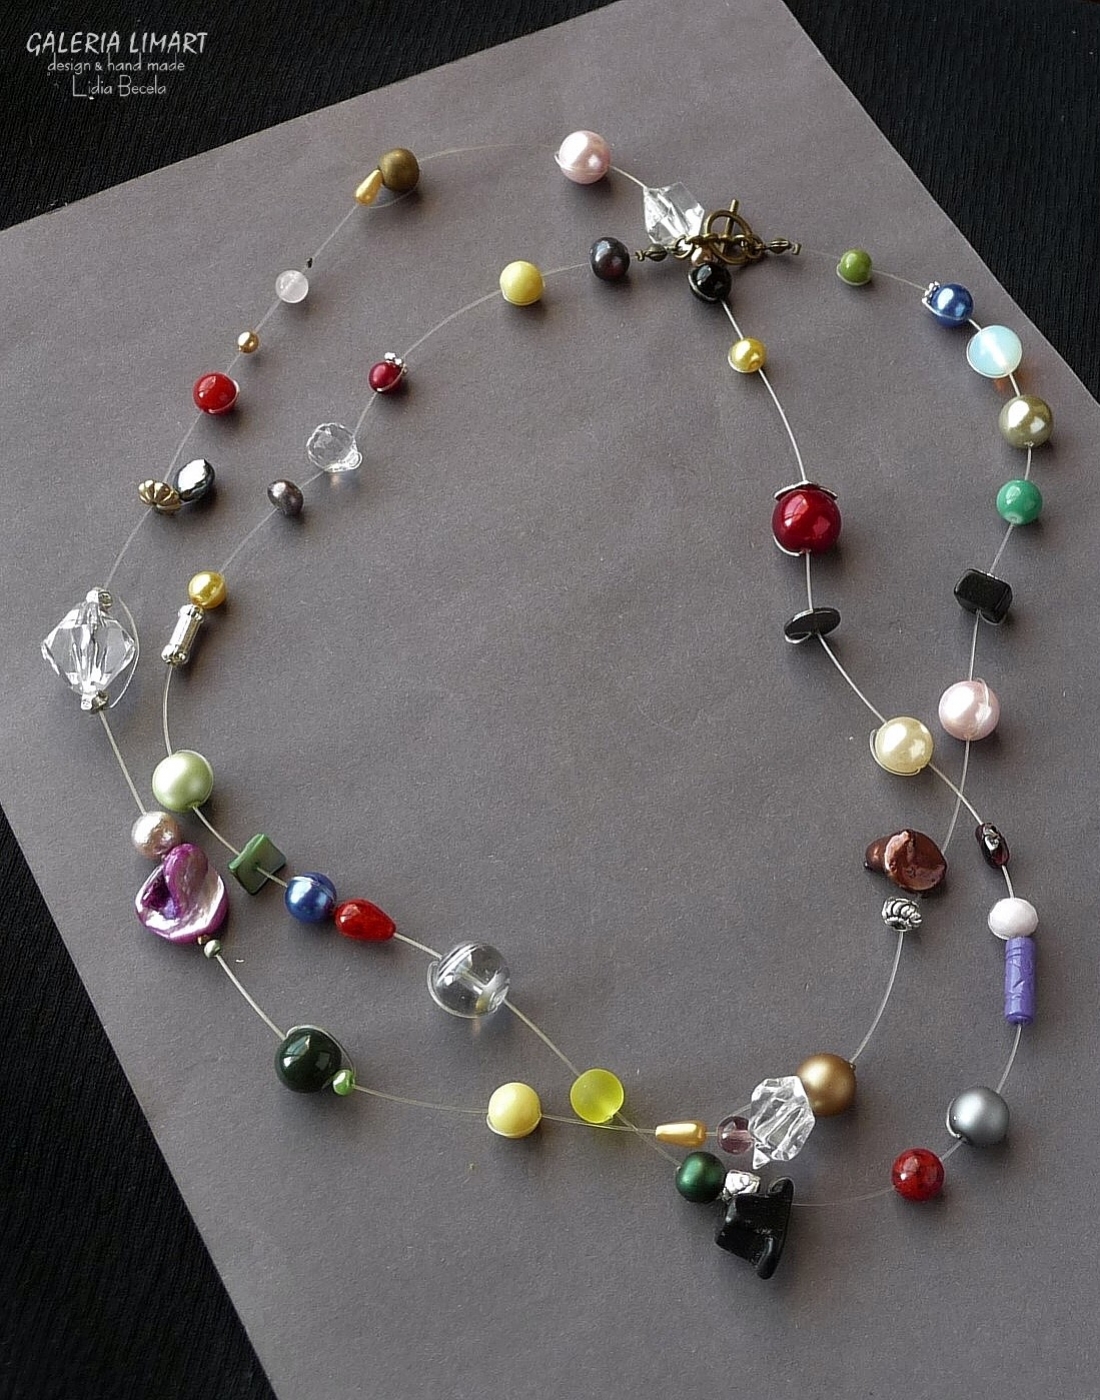 bogata kompozycja bajecznie kolorowych przeróżnych perełek z kryształkami, szkłem weneckim, minerałami w ciekawej i niebanalnej palecie barw